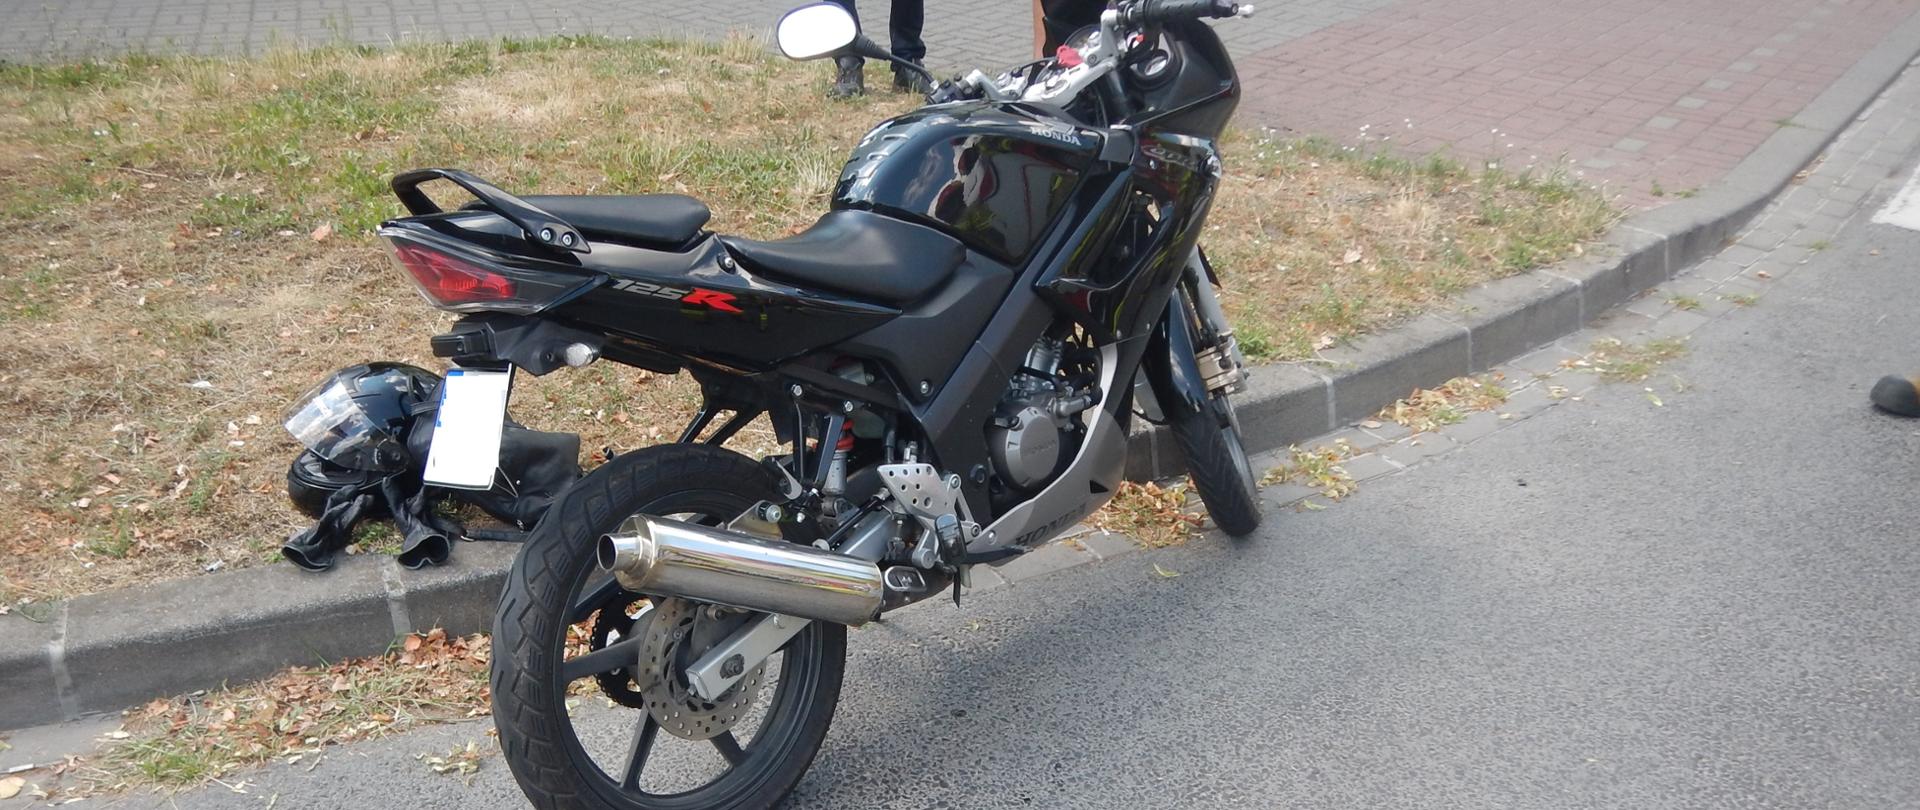 Zdjęcie przedstawia czarny motocykl, który brał udział w zdarzeniu. Obok motocyklu znajduje się kask oraz rękawice kierującego motocyklem. Motocykl znajduje się na skraju drogi.